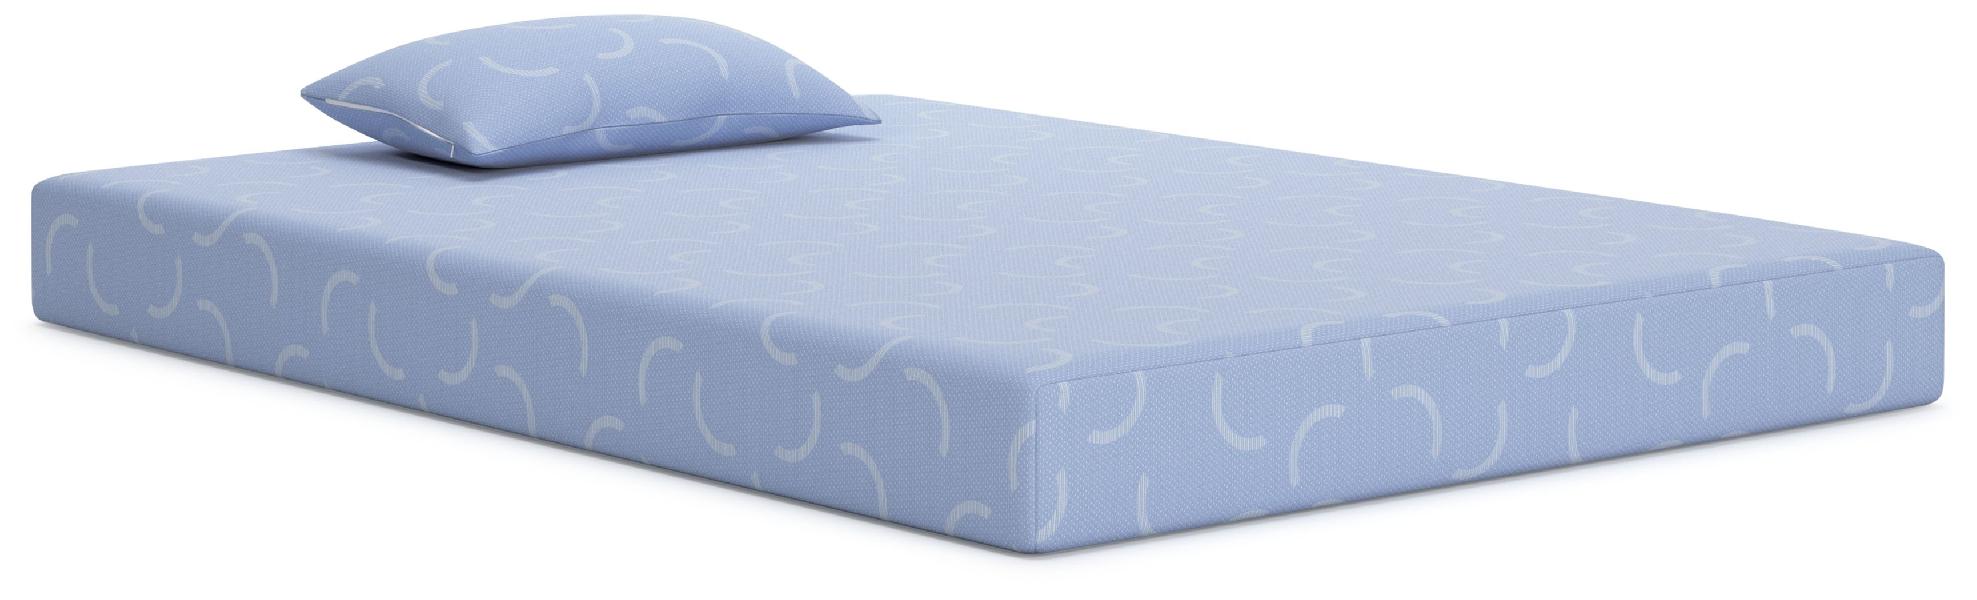 Image of Ikidz Ocean - Blue - Full Mattress And Pillow Set of 2